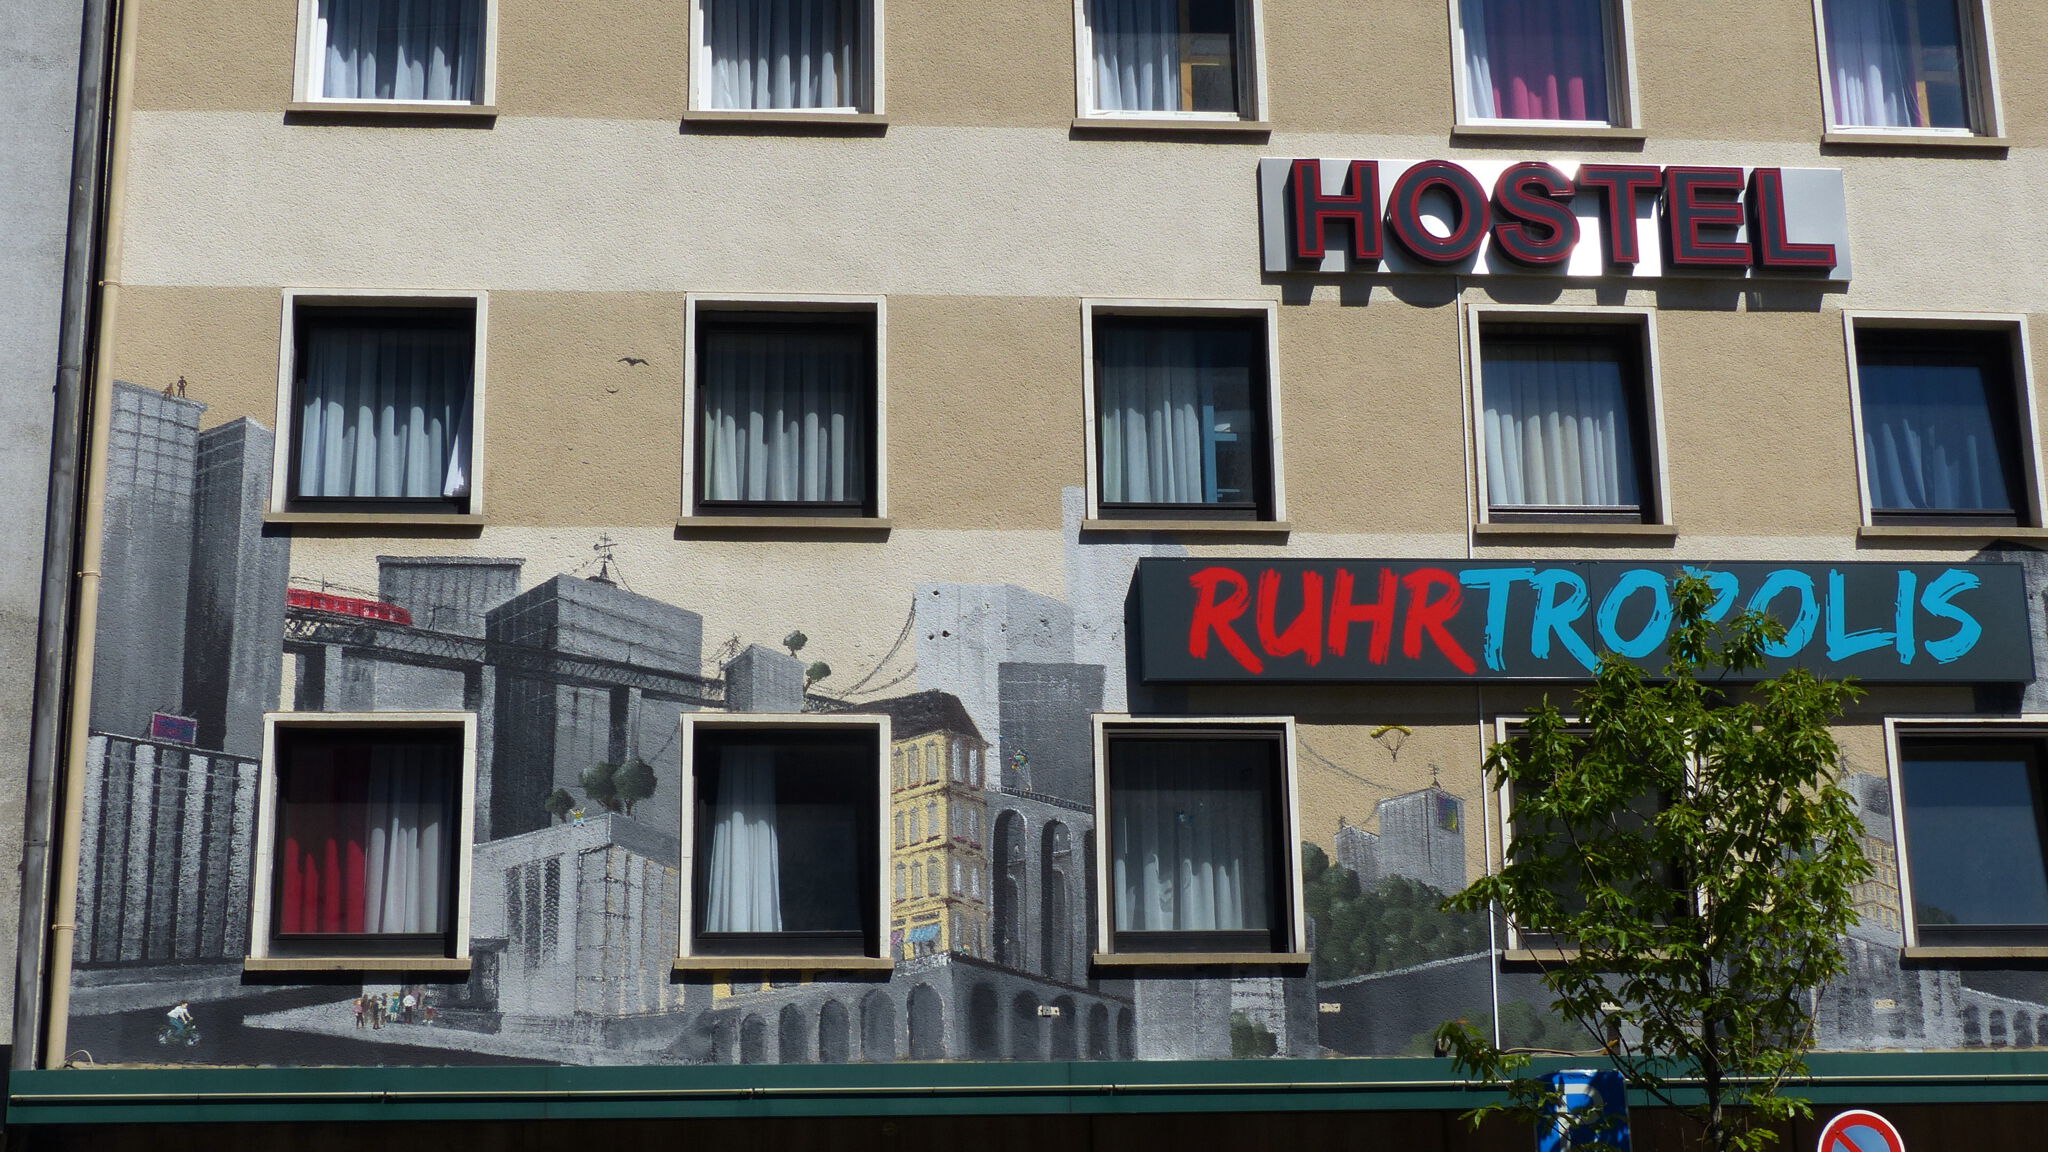 Unknown - Essen&mdash;Ruhr Tropolis Hostel